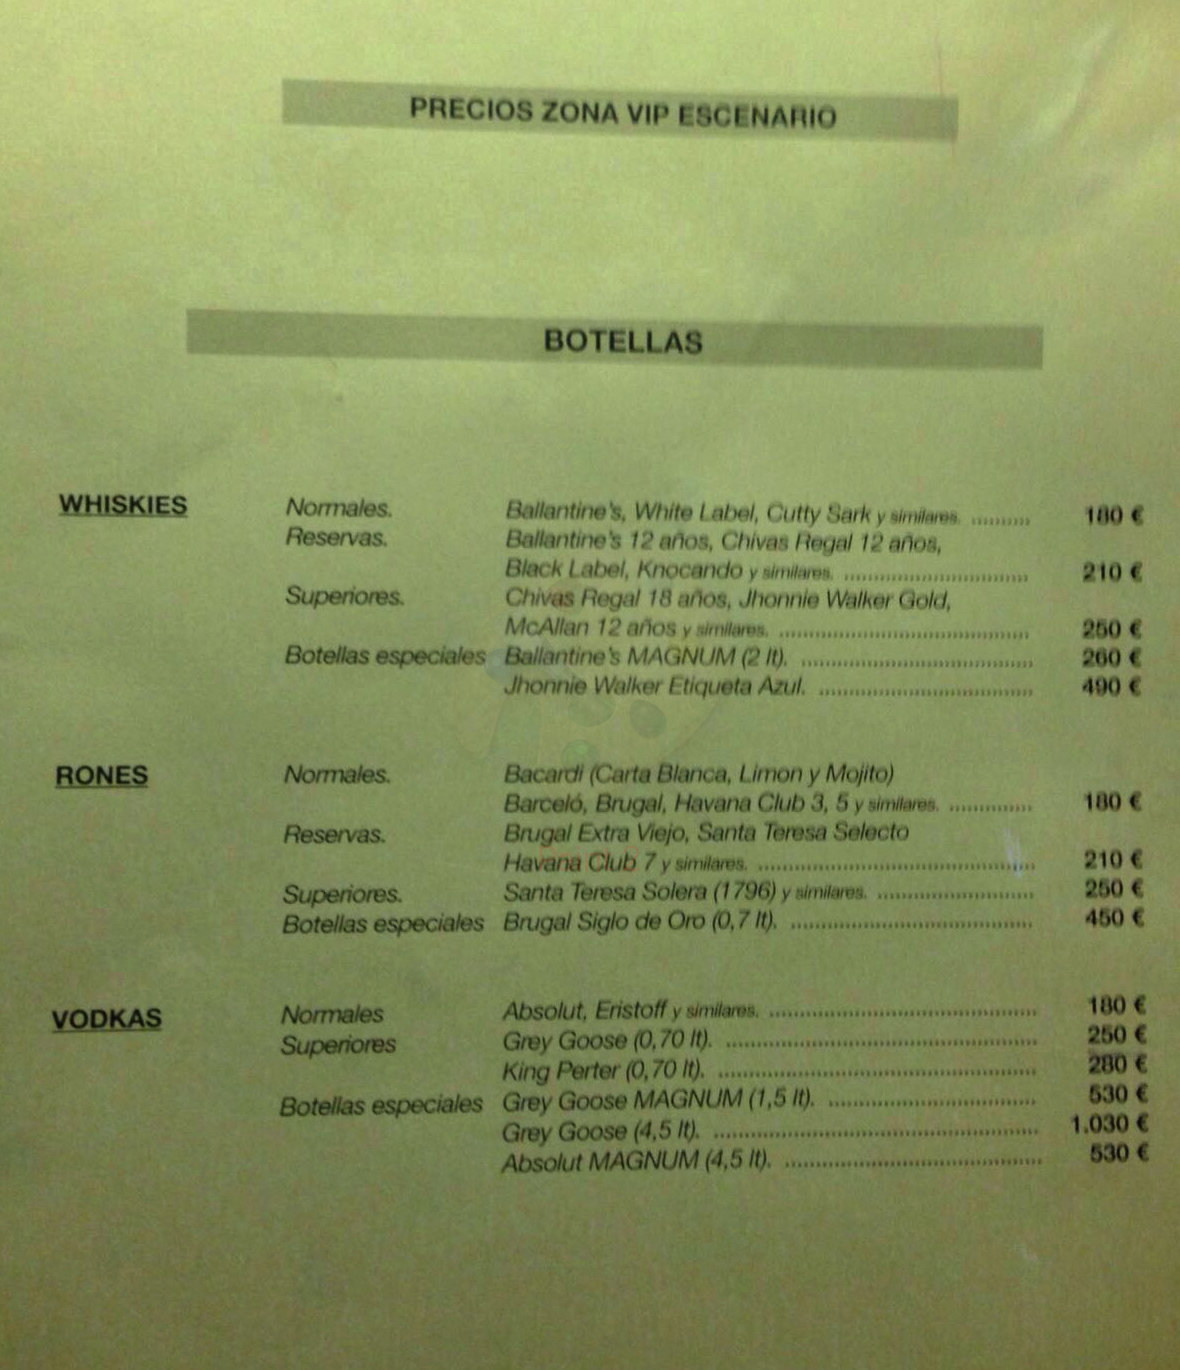 menu carta de precios vip joy eslava